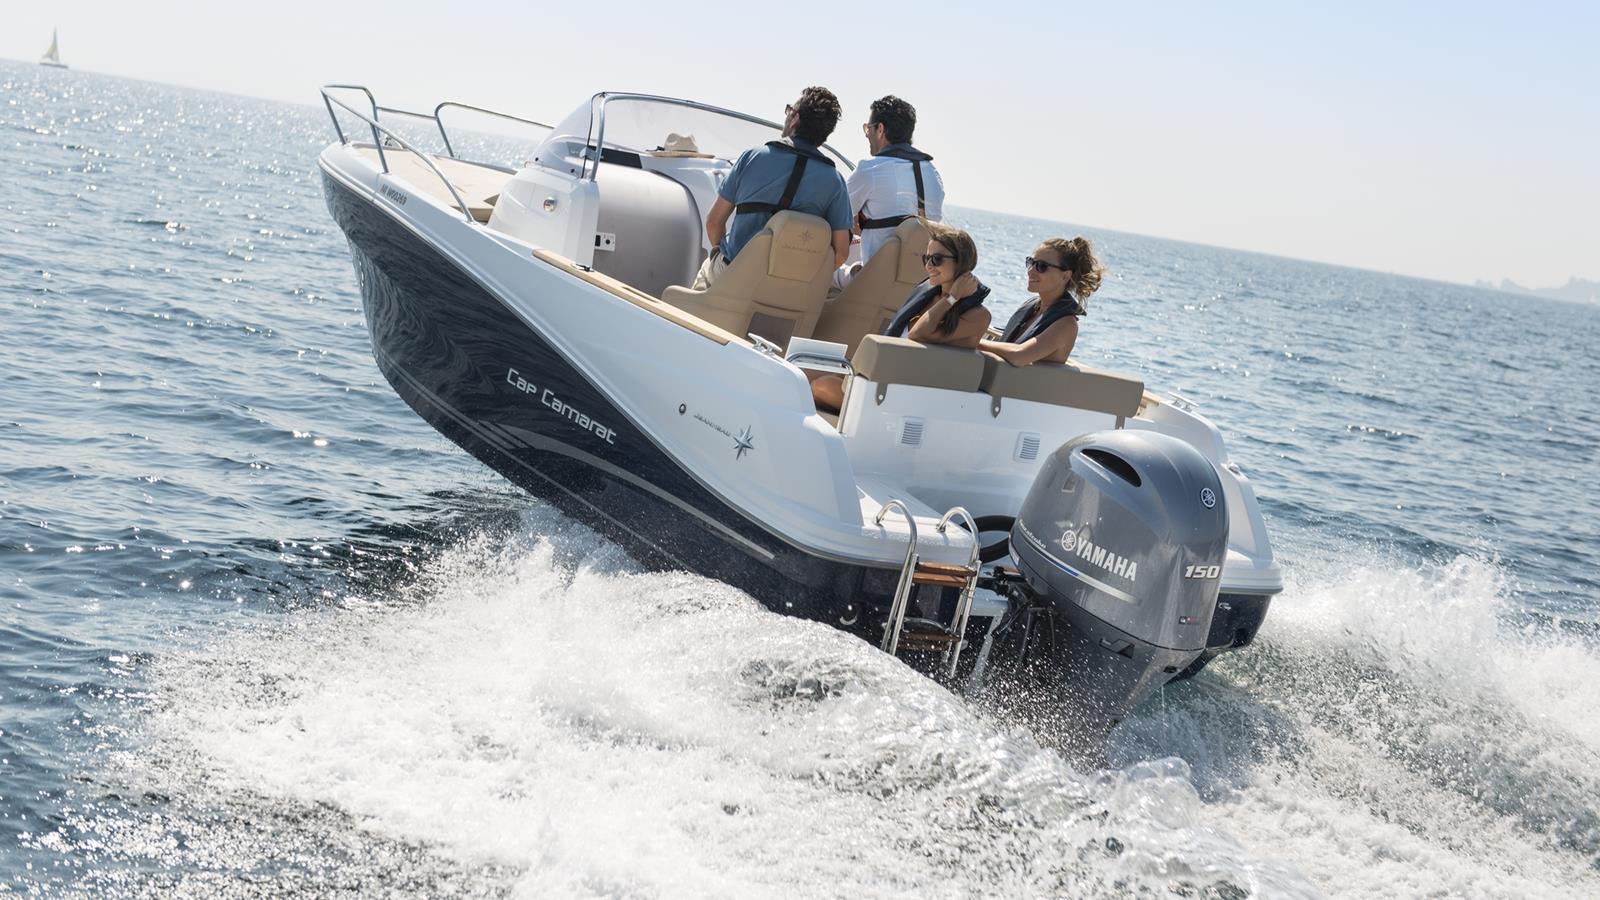 Een legendarische buitenboordmotor nog verder verbeterd! De nieuwste versie van onze legendarische F150 is met haar slanke nieuwe look en extra kenmerken perfect voor ontspanning op het water.